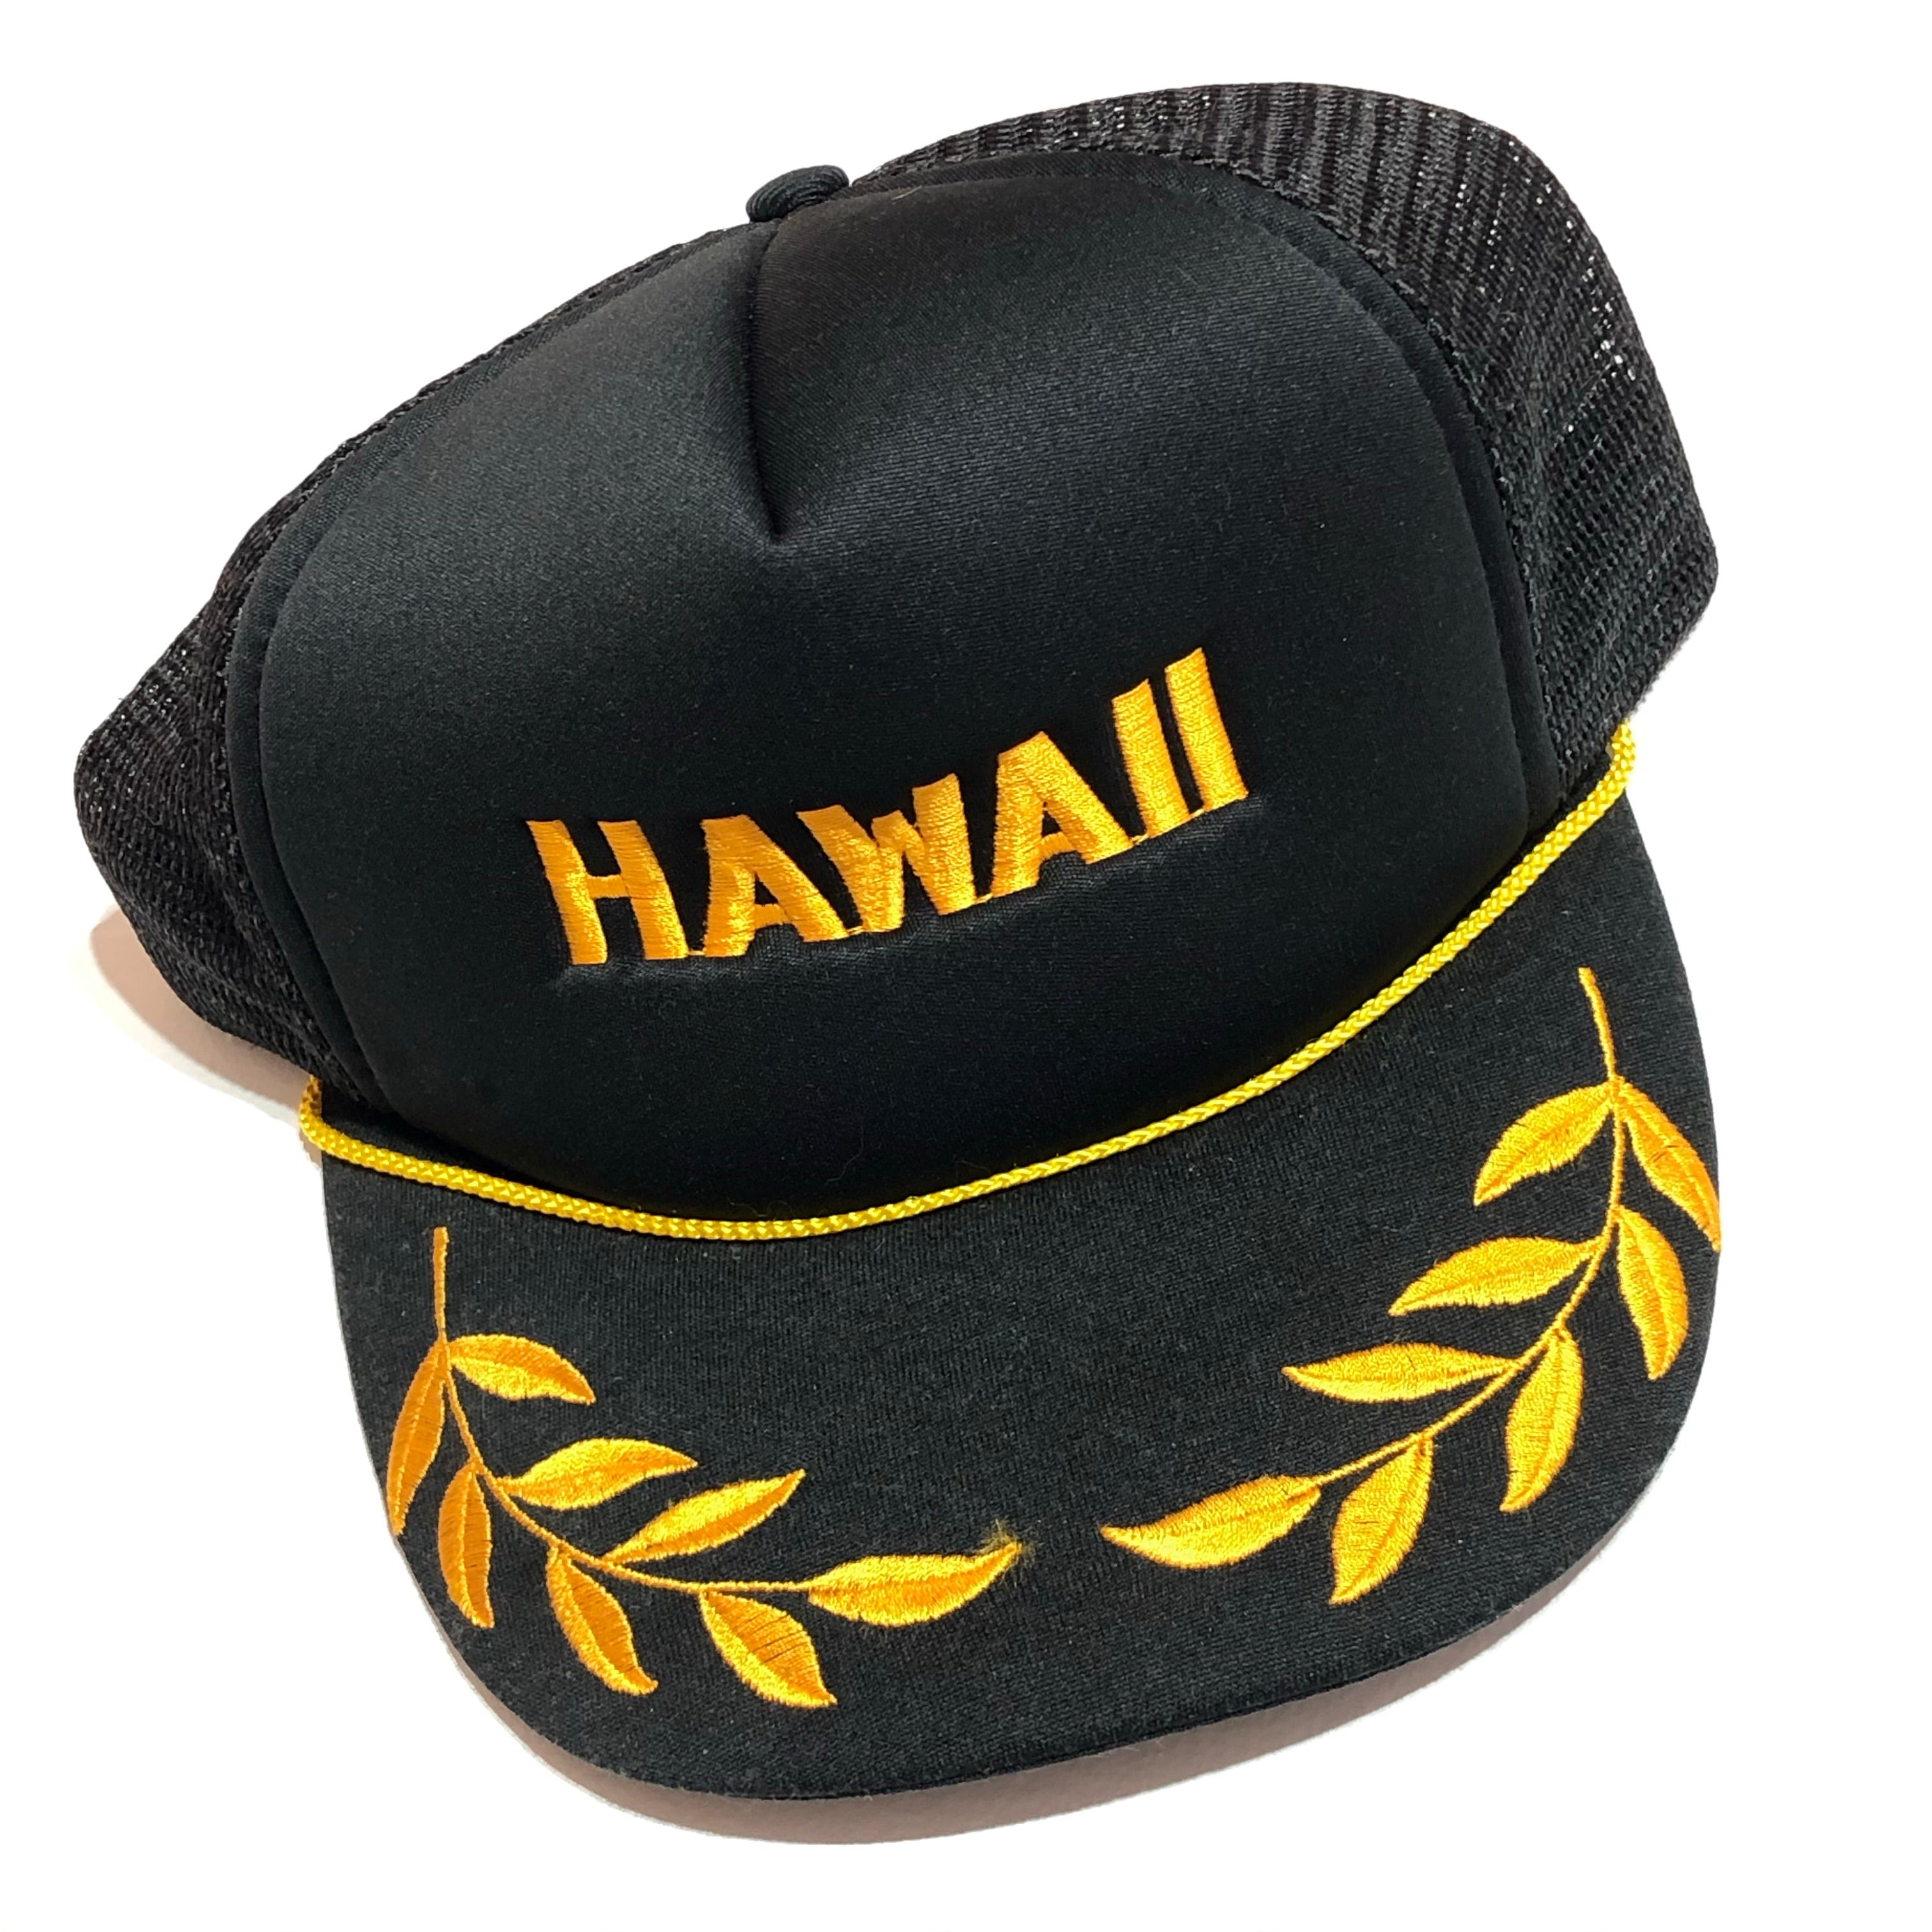 Vintage Hawaii Snapback